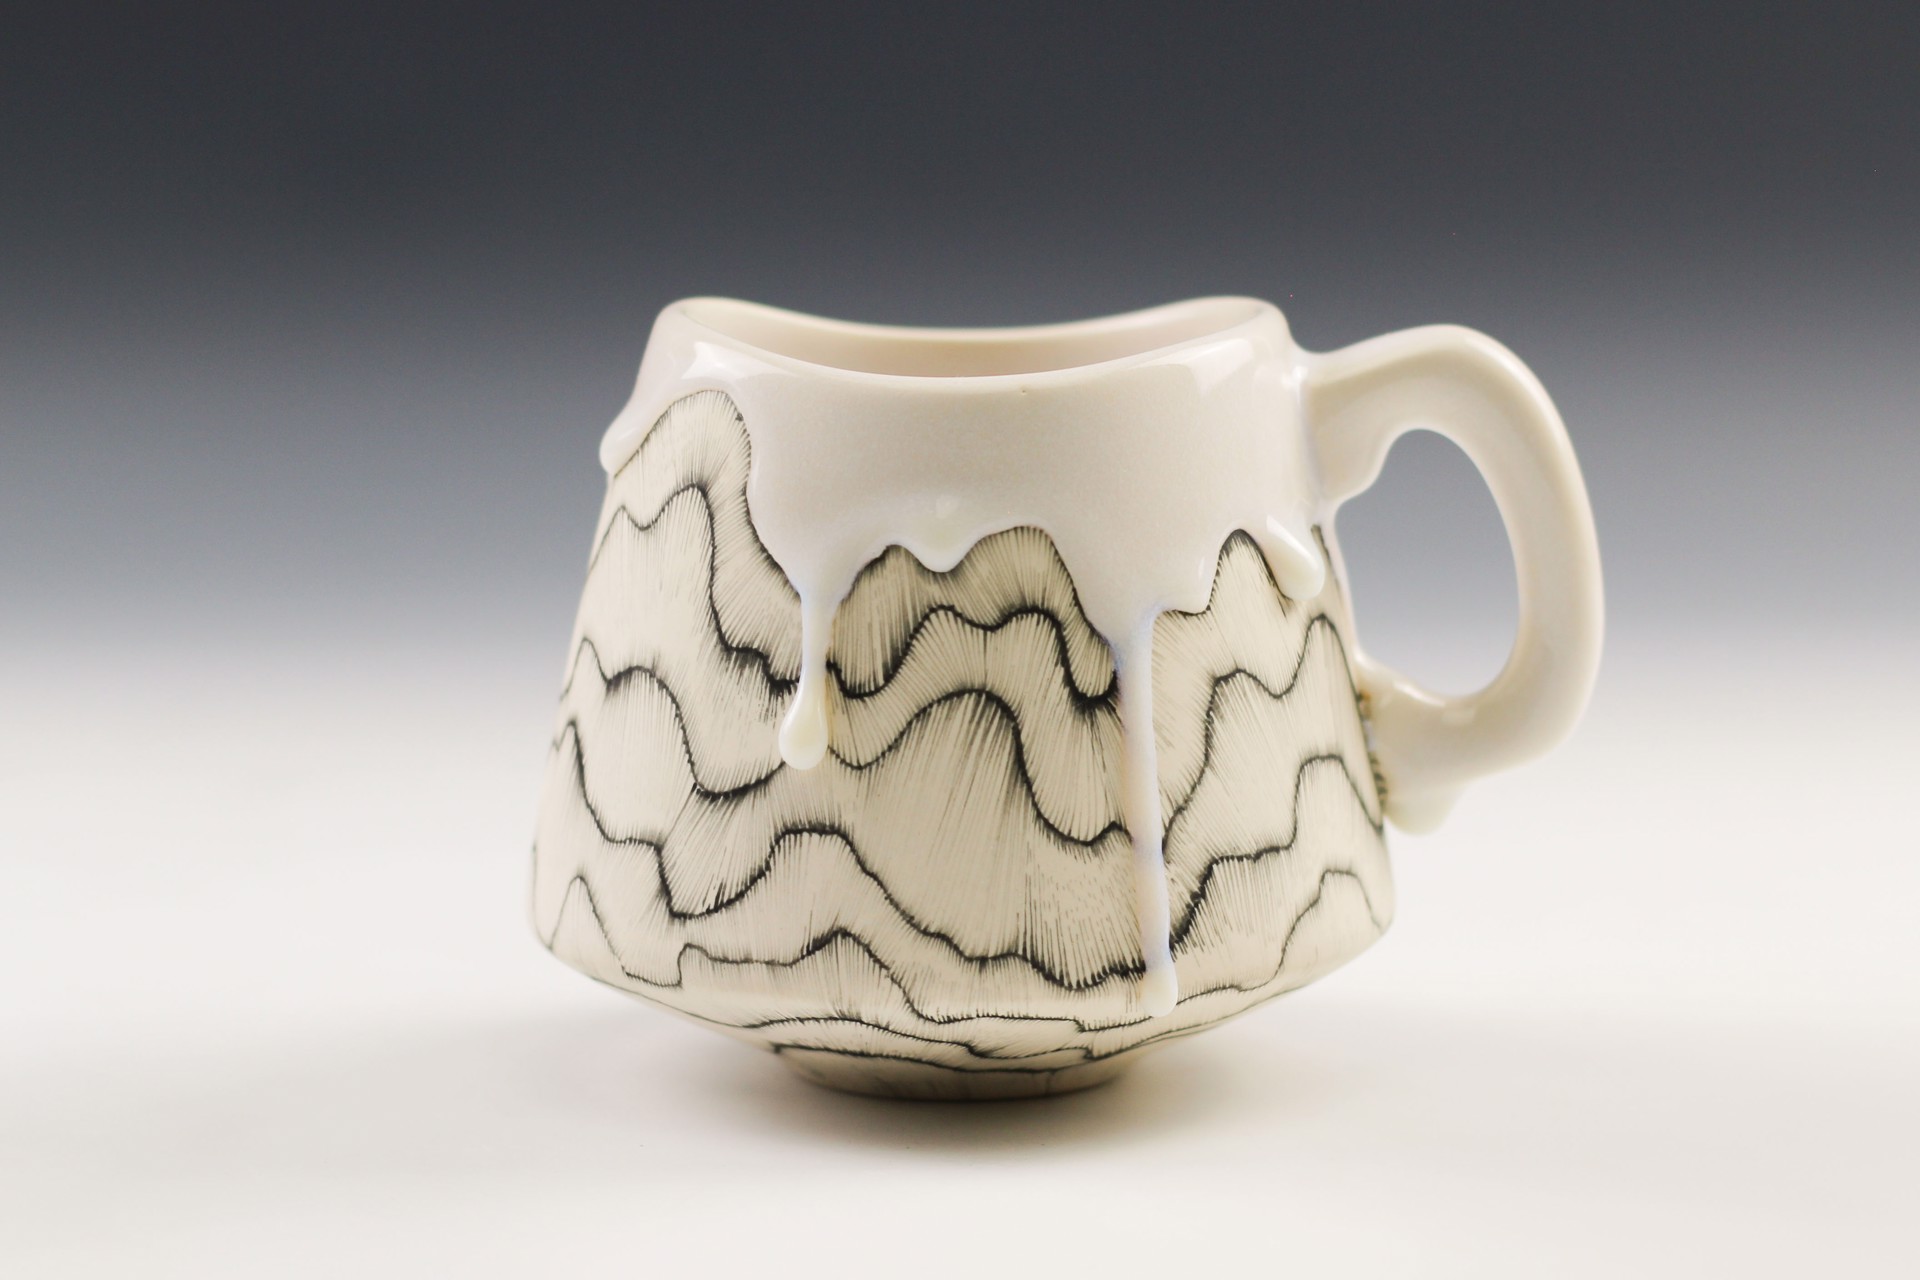 Large Mug by Noelle Hoover